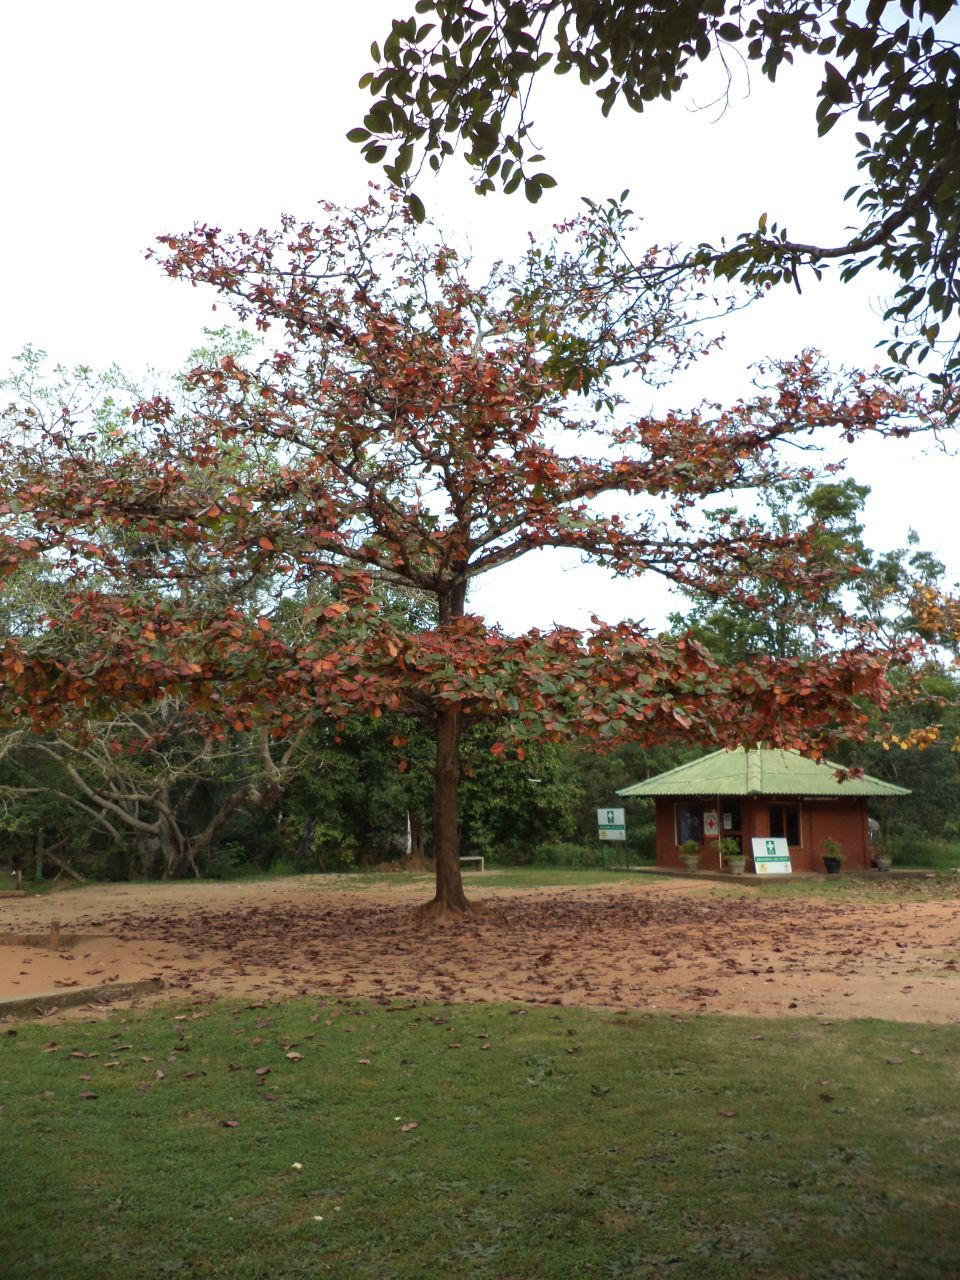 просто красивое дерево, не пальма, как кругом - Шри-Ланка 2017